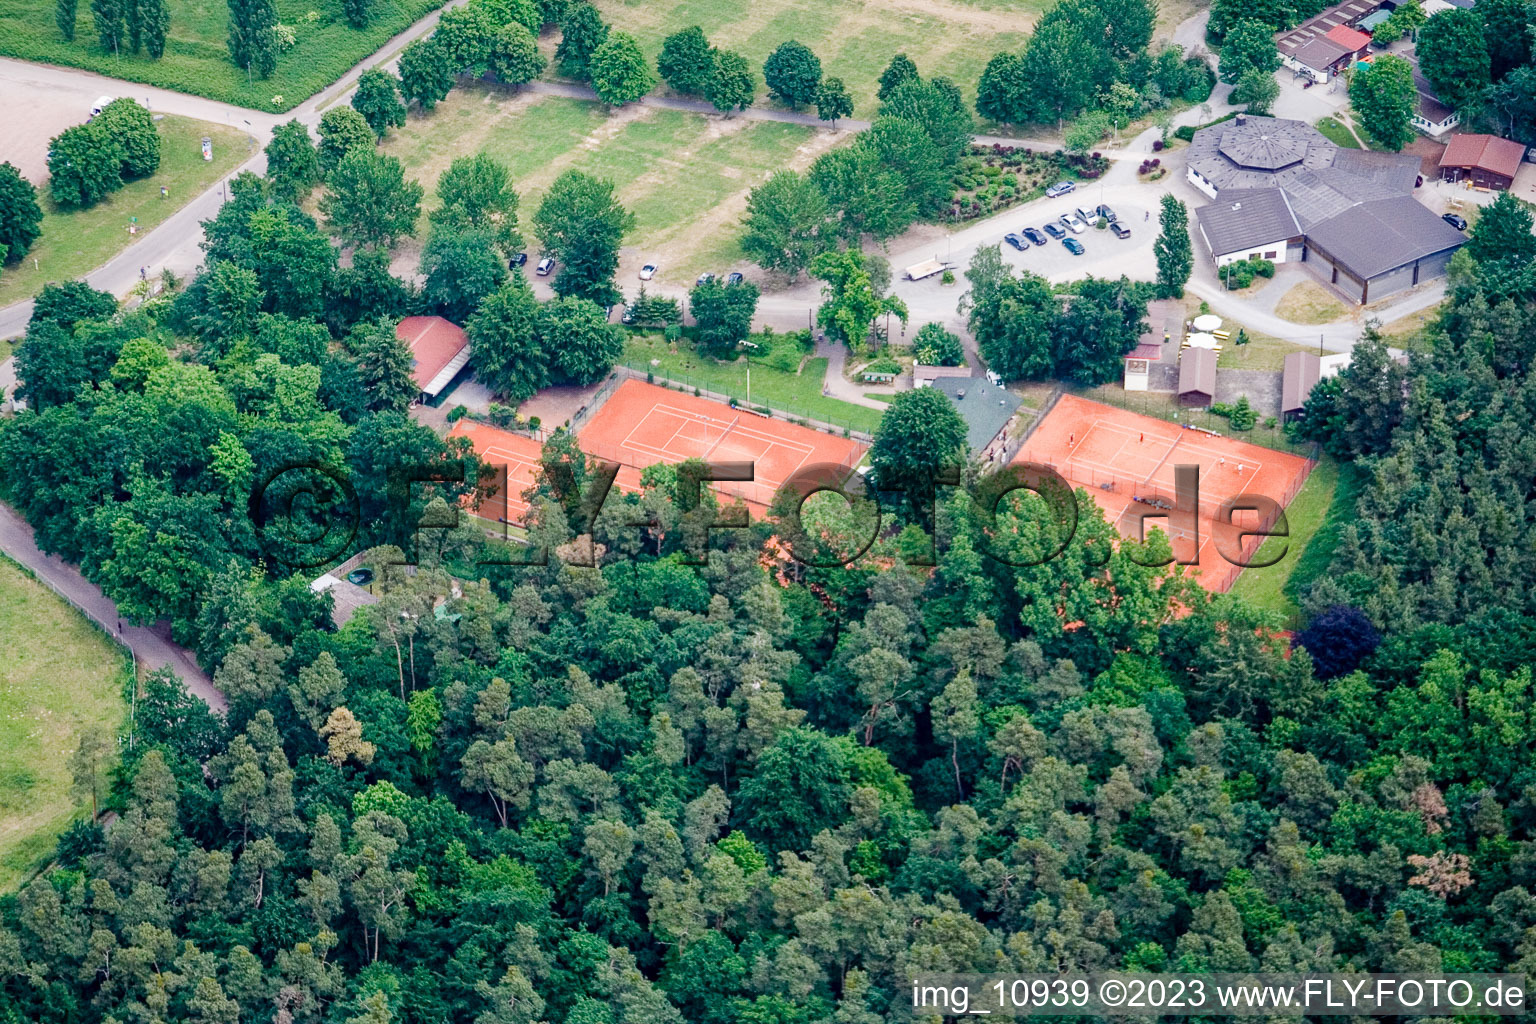 Vue aérienne de Club de tennis à Rülzheim dans le département Rhénanie-Palatinat, Allemagne